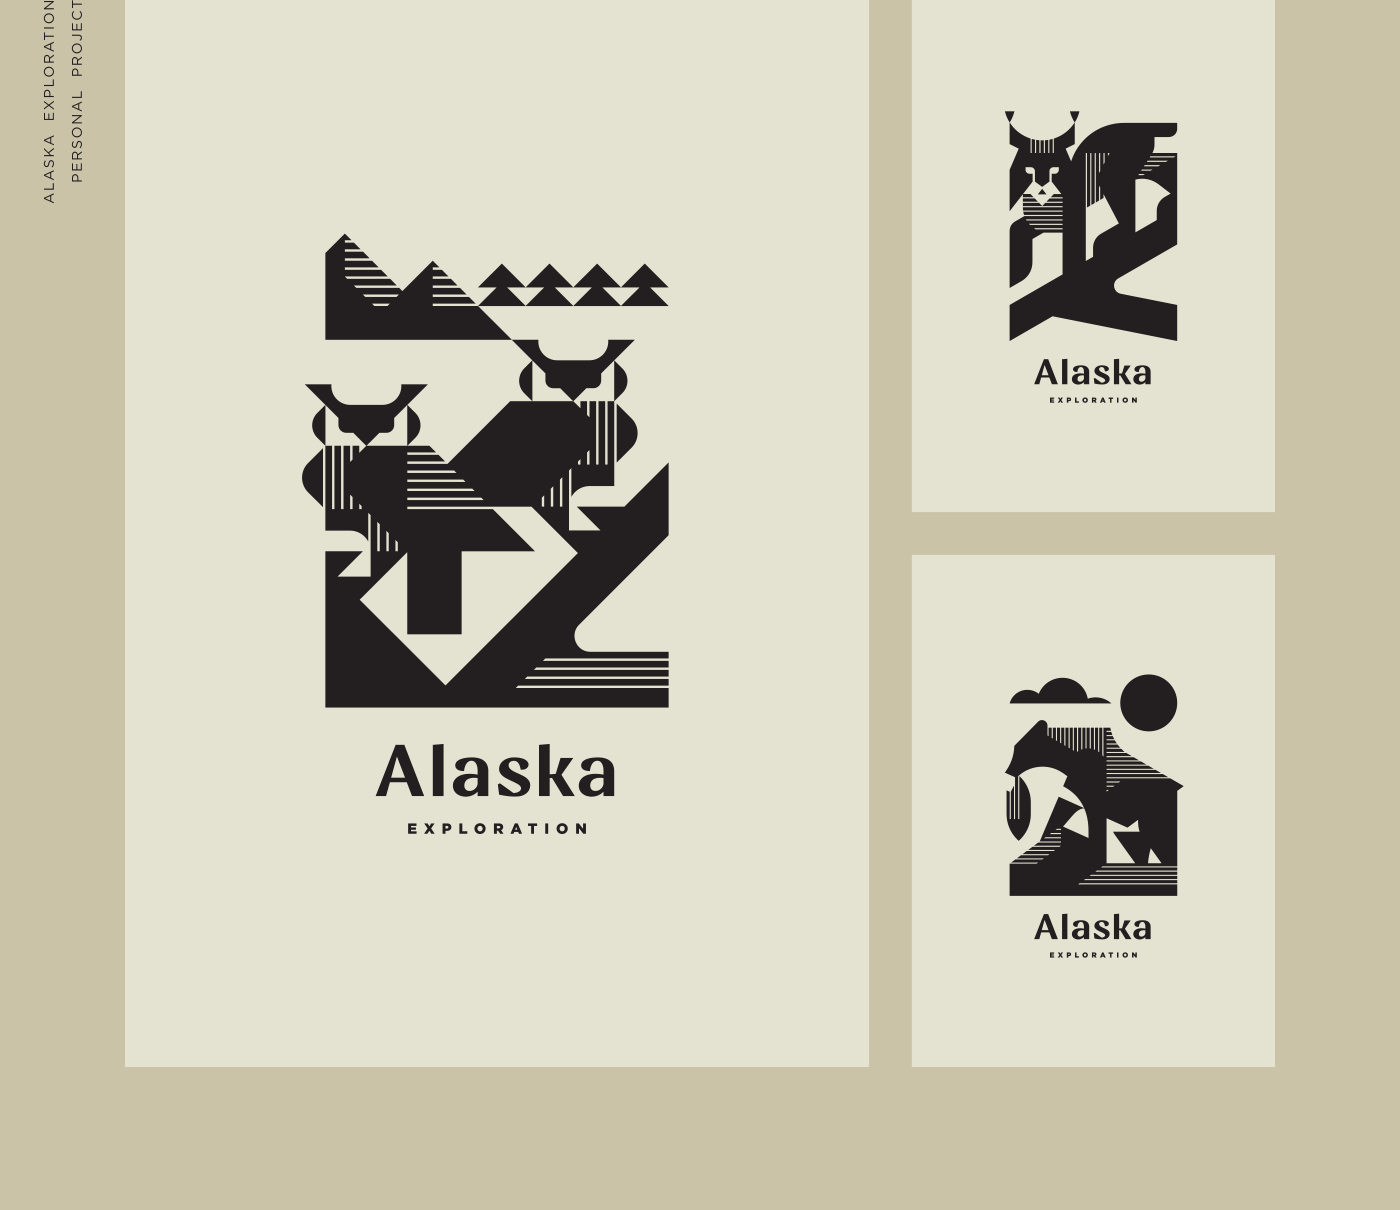 Alaska exploration posters